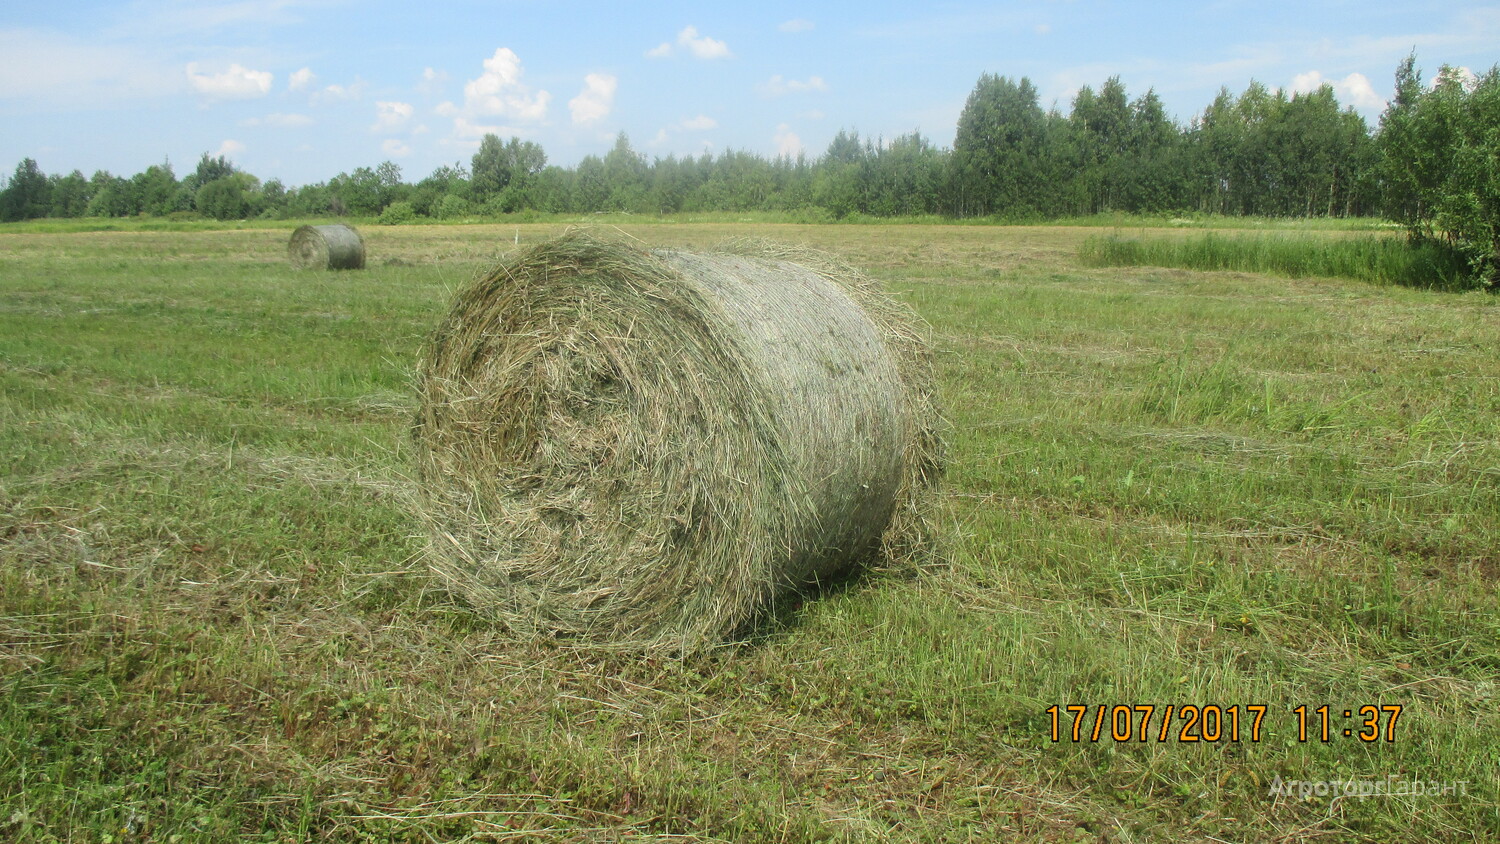 Авито объявления сено. Сено в тюках 250 кг. Размер рулона сена. Диаметр рулона сена 250 кг. Сено в рулонах в Лебяжье Кировской области.